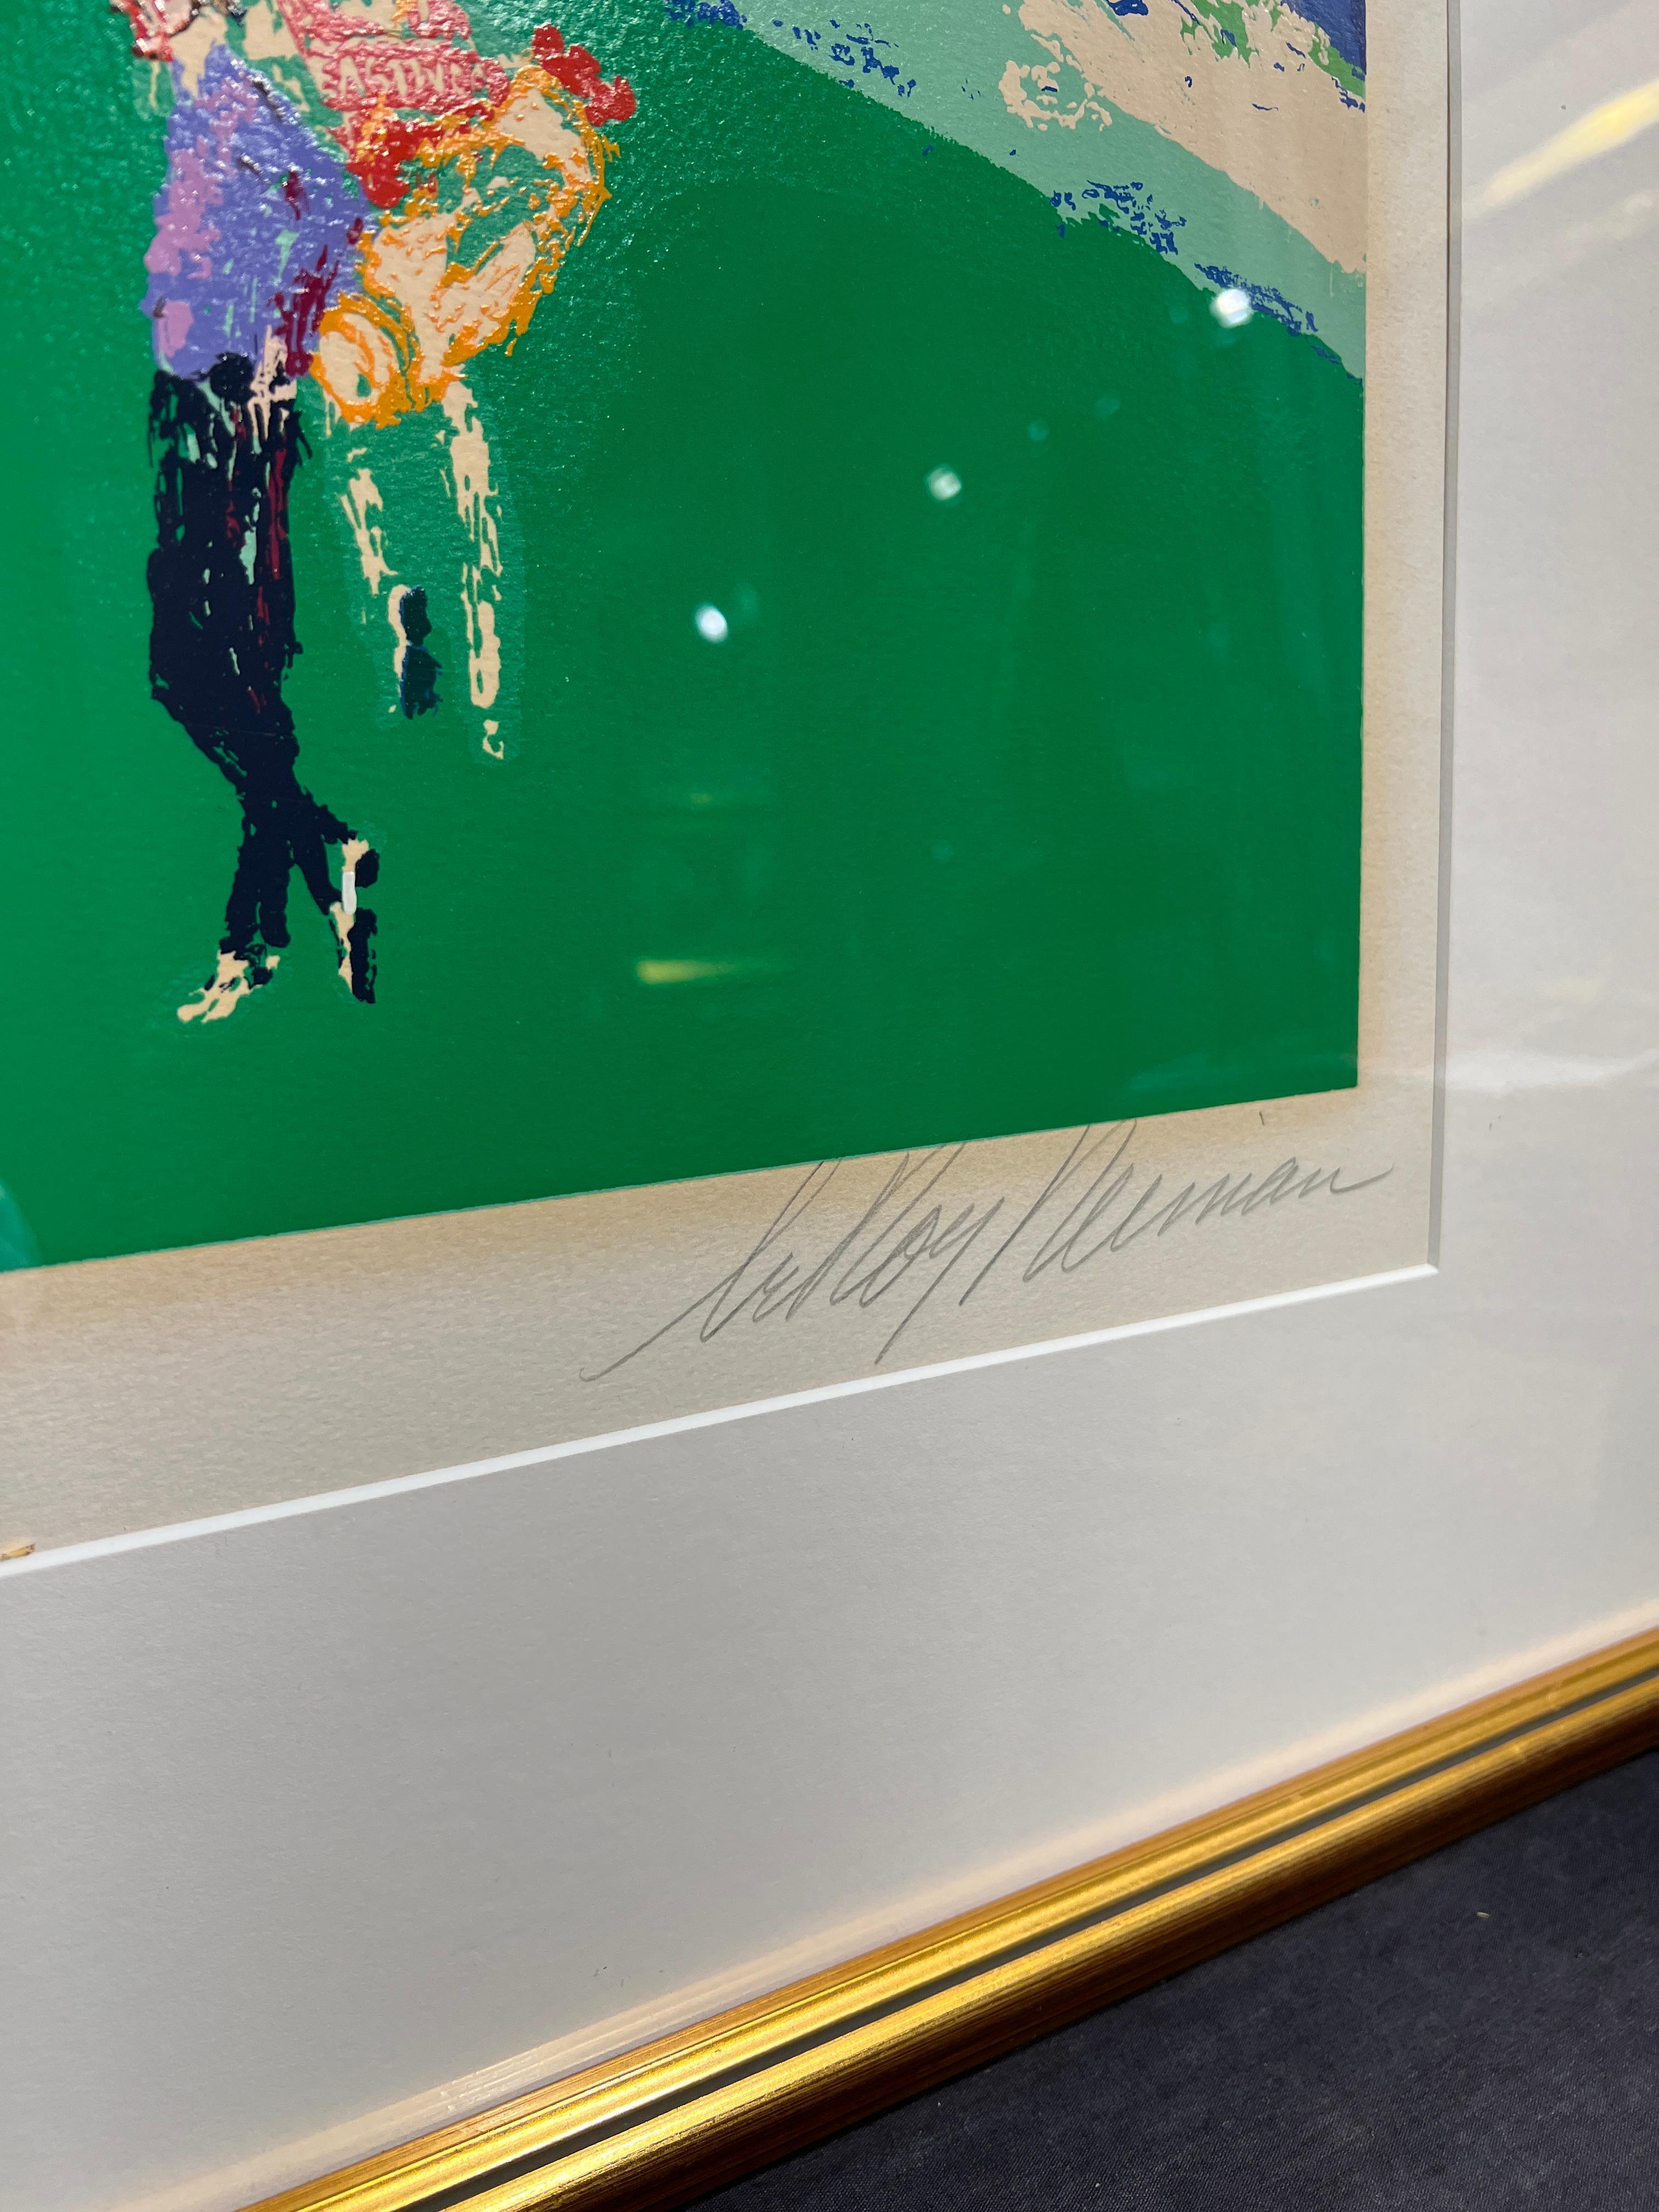 Le 18e à Pebble Beach
LeRoy Neiman (américain, 1921-2012)
Signé au crayon en bas à droite
Edition 176/400 en bas à gauche
26 x 43 pouces
37.25 x 54.5 pouces avec cadre

Connu pour ses peintures aux couleurs vives et ses sérigraphies de stars du